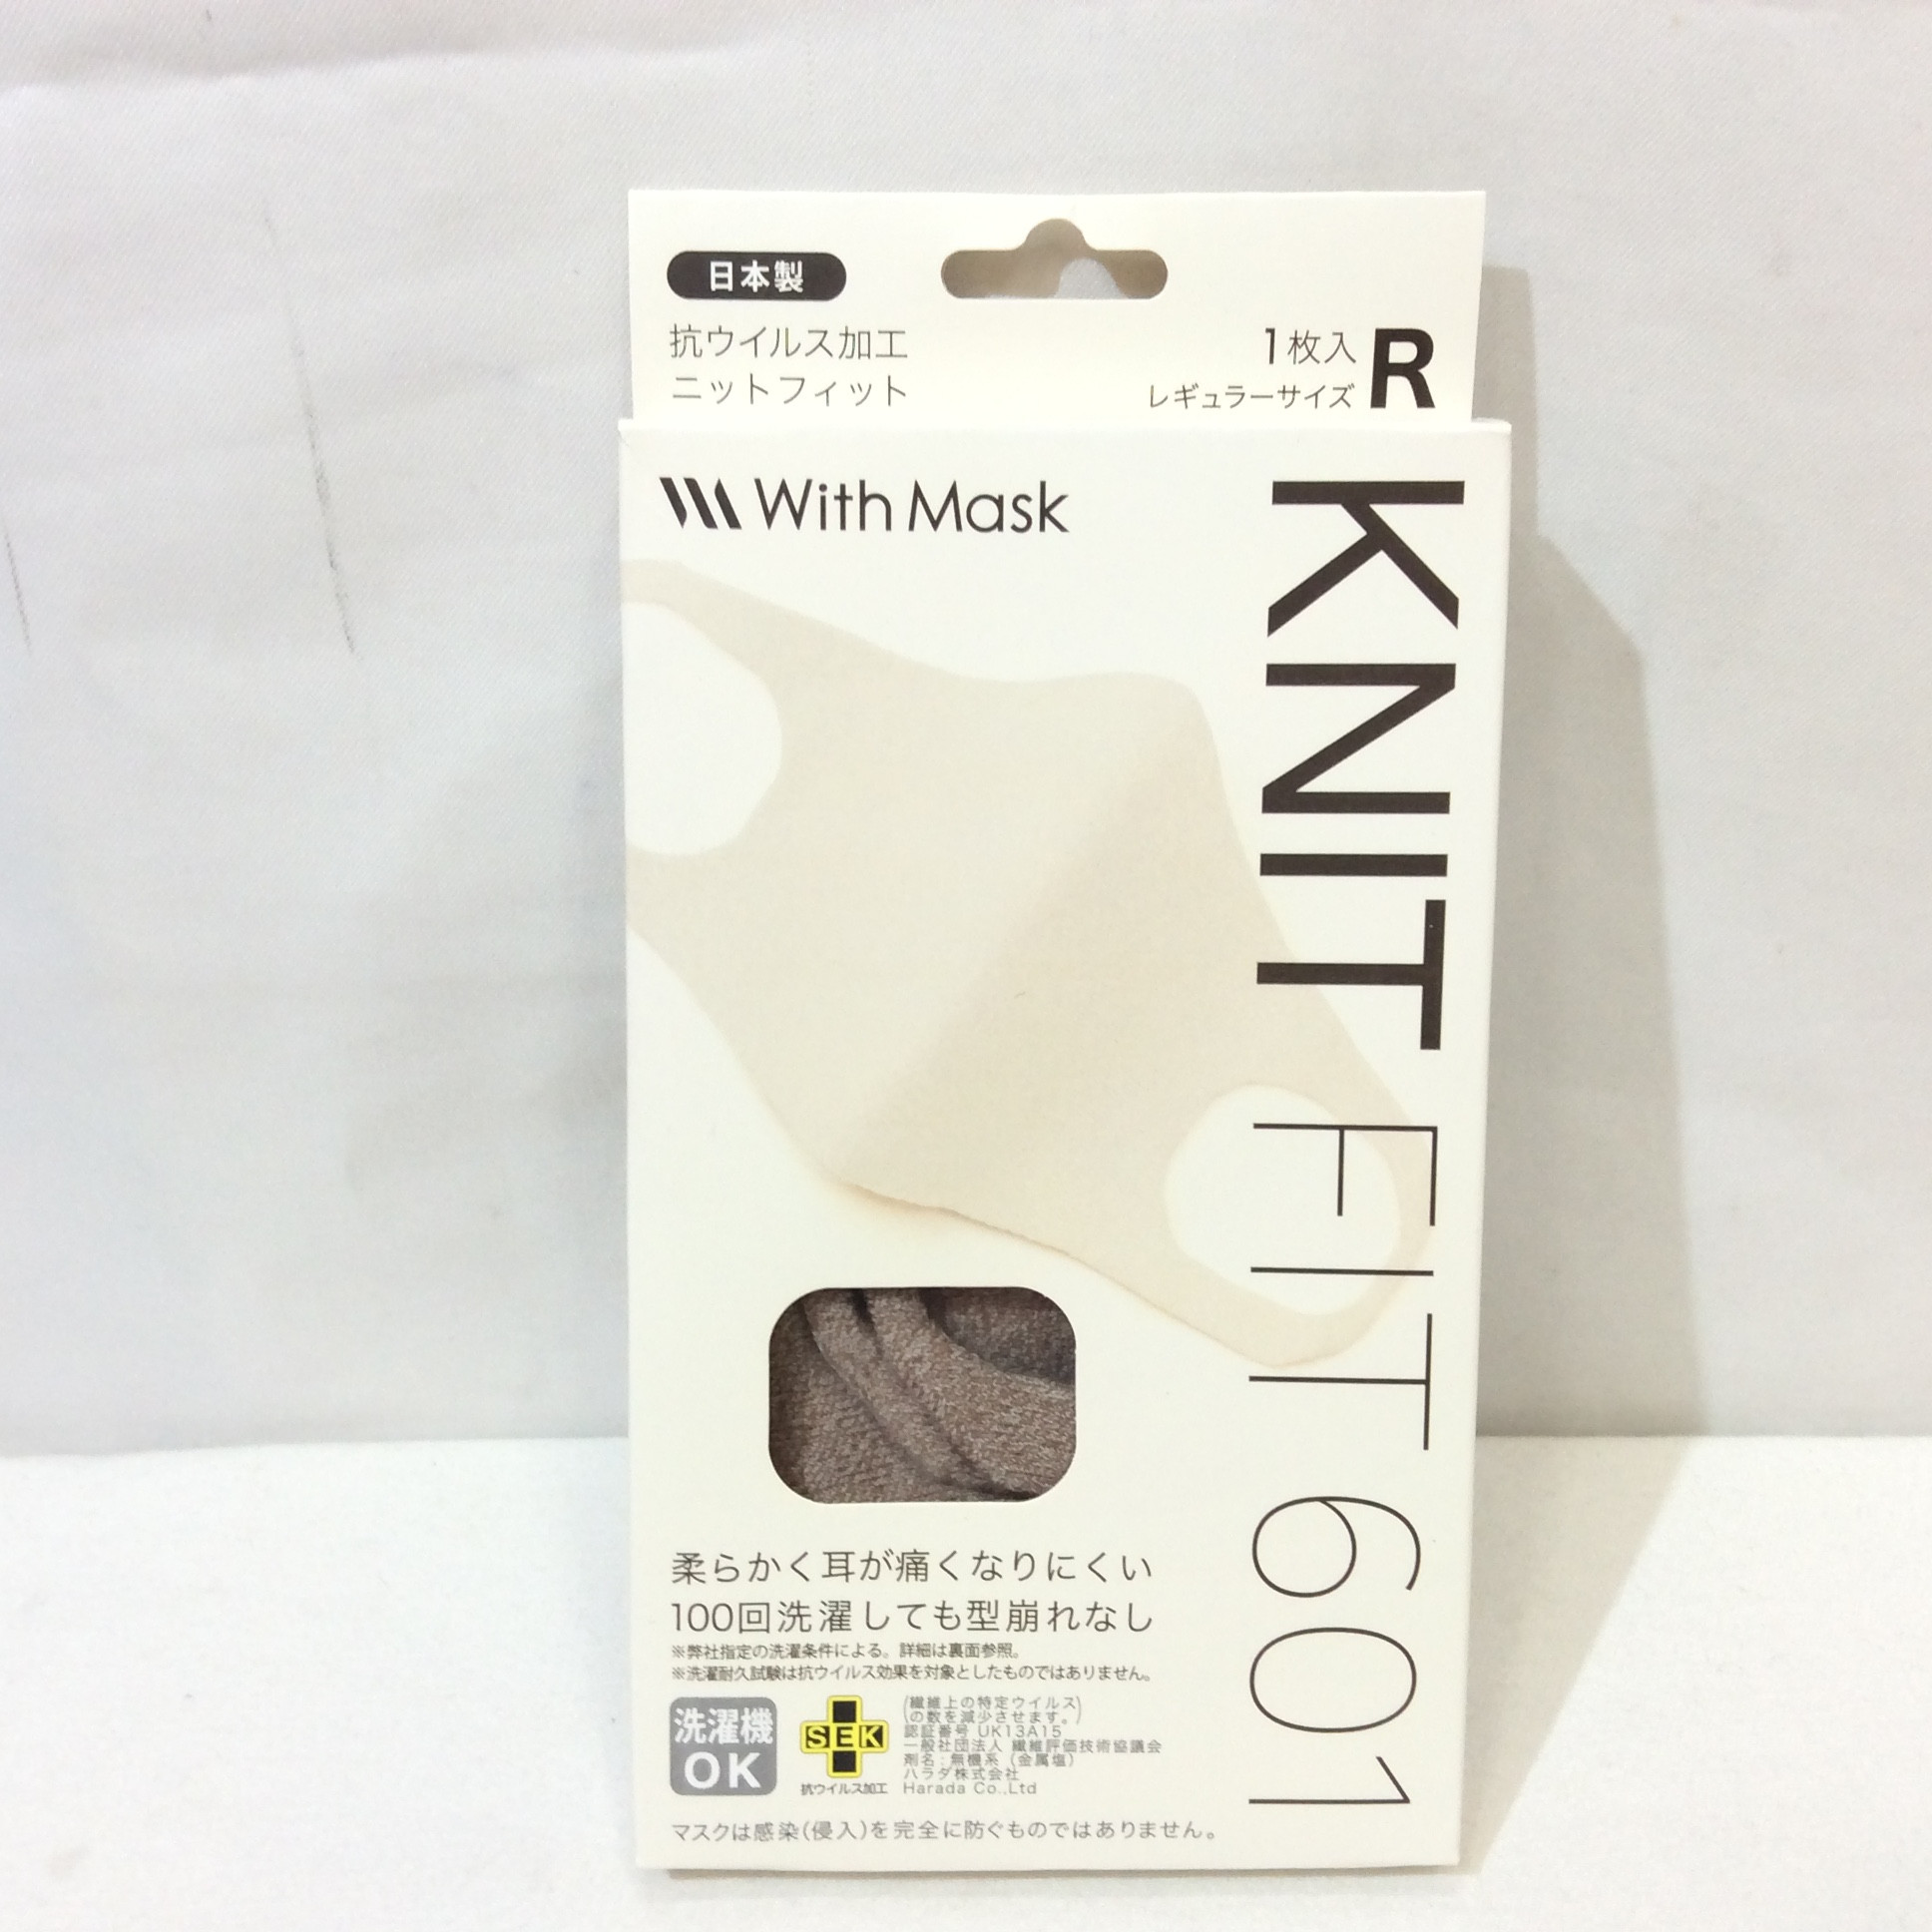 新品 日本製 ニットフィットマスク 1枚入 ベージュ系